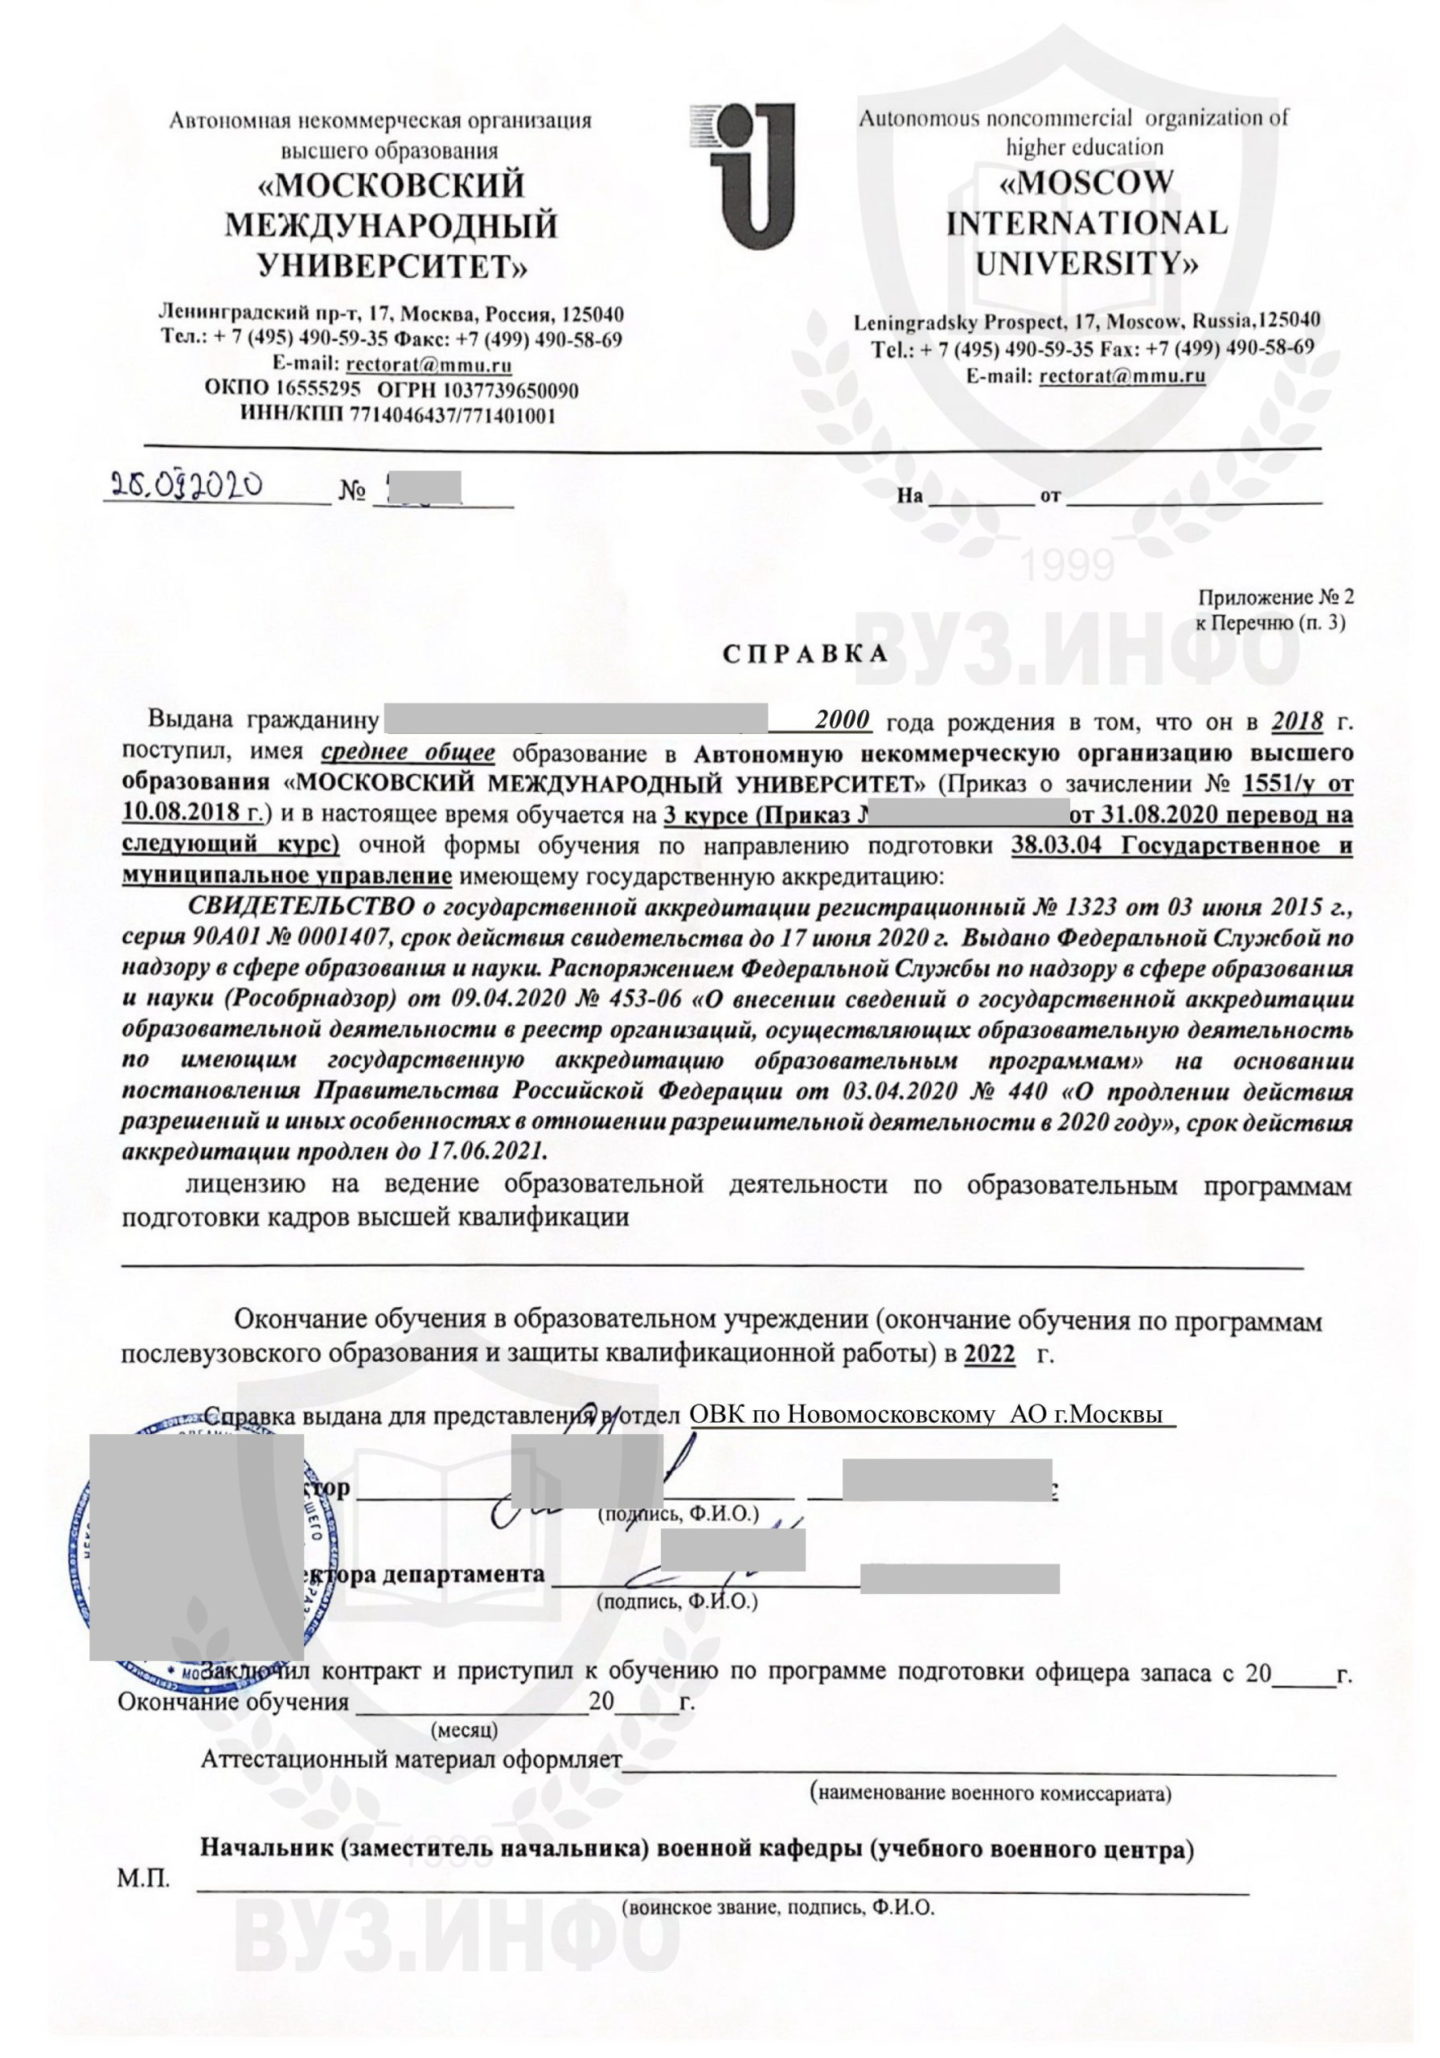 Справка из Московского международного института в военкомат для получения отсрочки (2020 год выдачи)